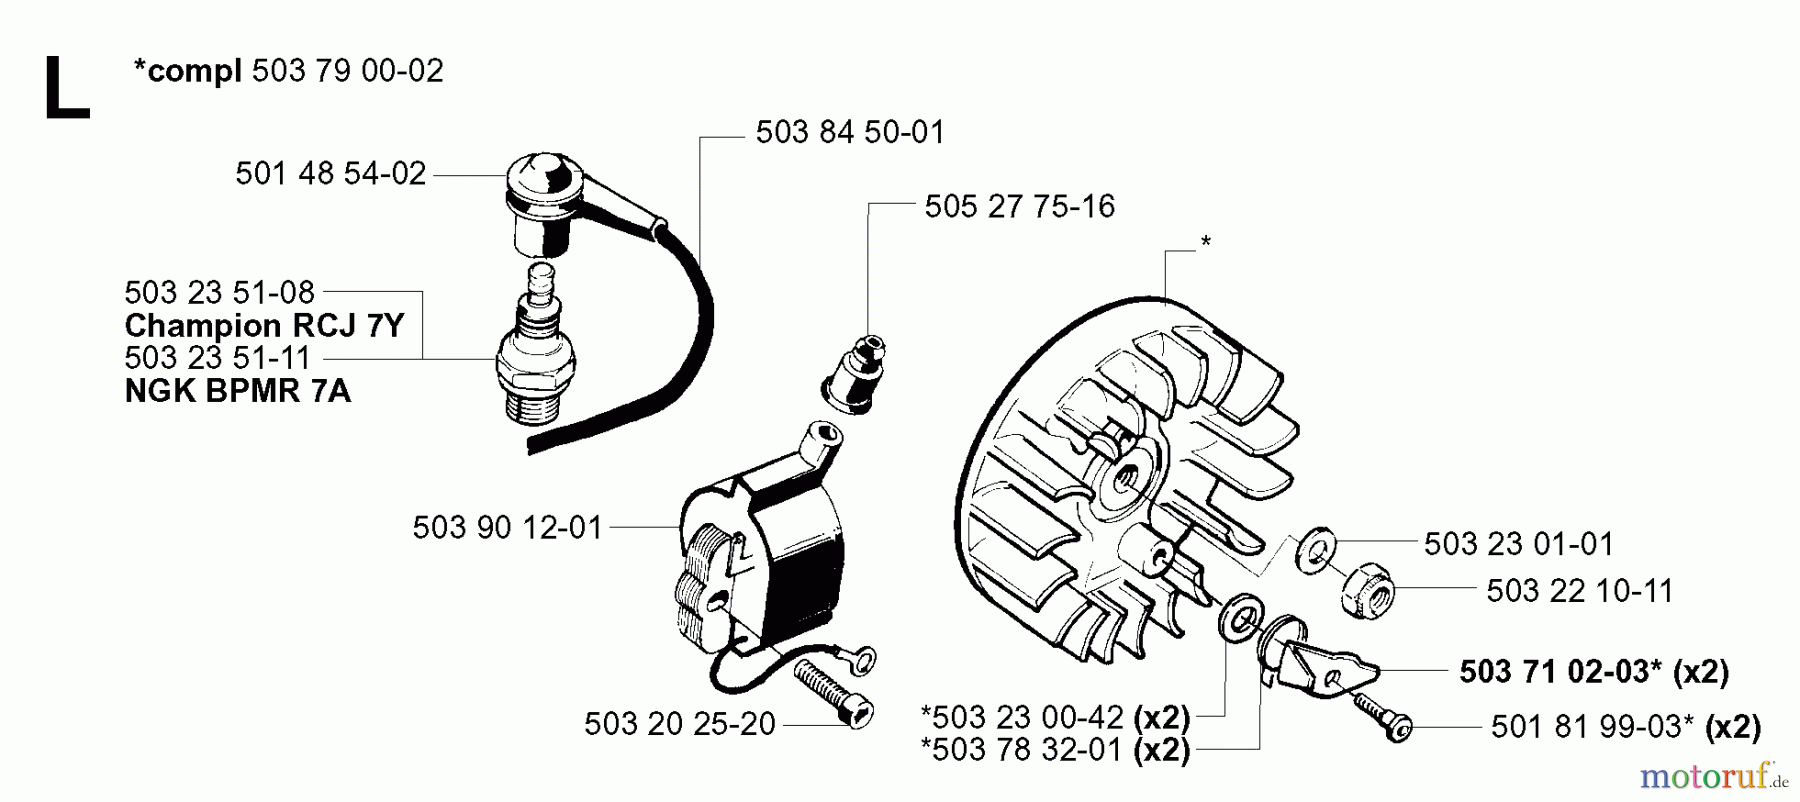  Jonsered Motorsensen, Trimmer GR41 - Jonsered String/Brush Trimmer (2001-03) IGNITION SYSTEM